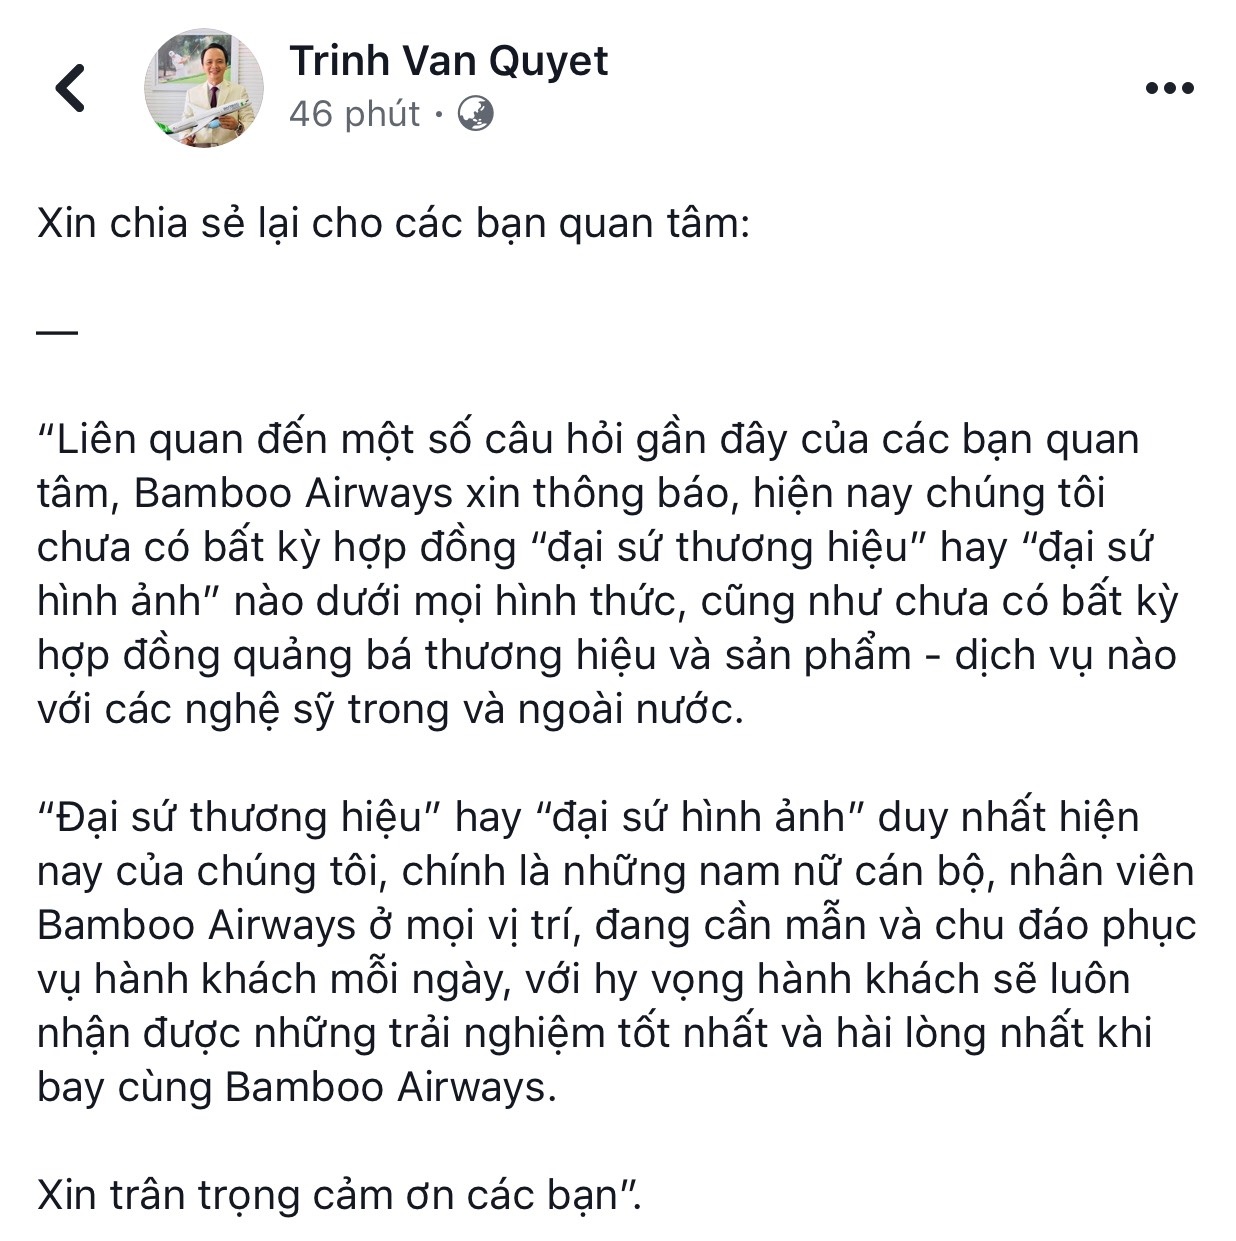 dam vinh hung khong phai la dai su thuong hieu cua bamboo airways